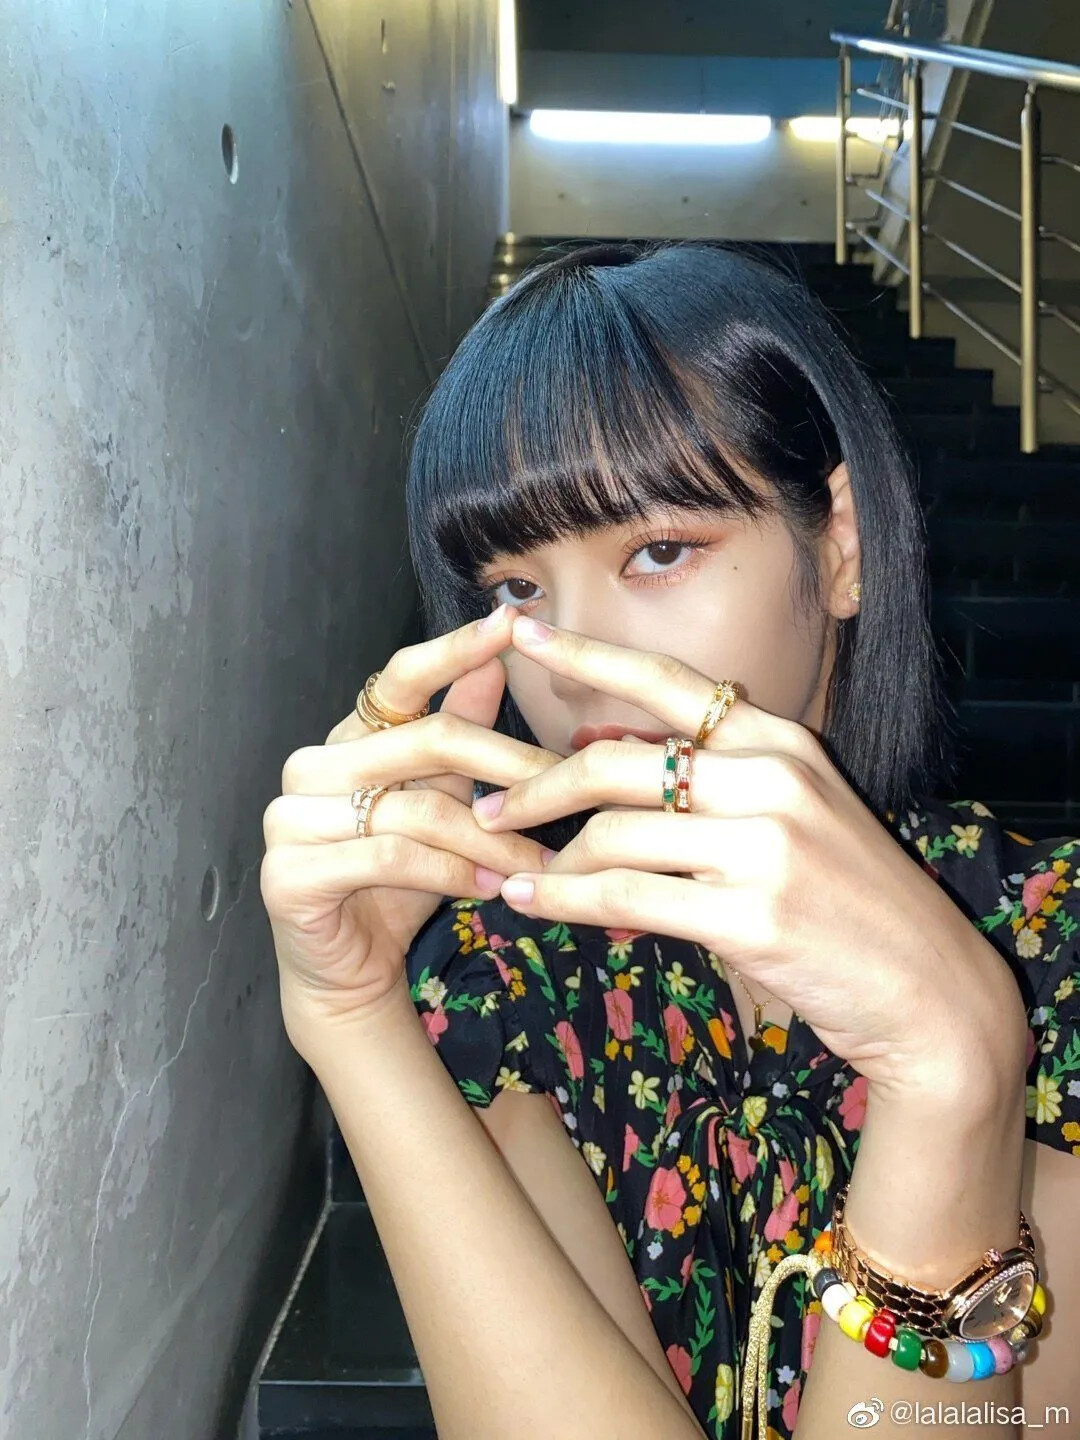 K-pop: Blackpink's Lisa face suspension on Weibo